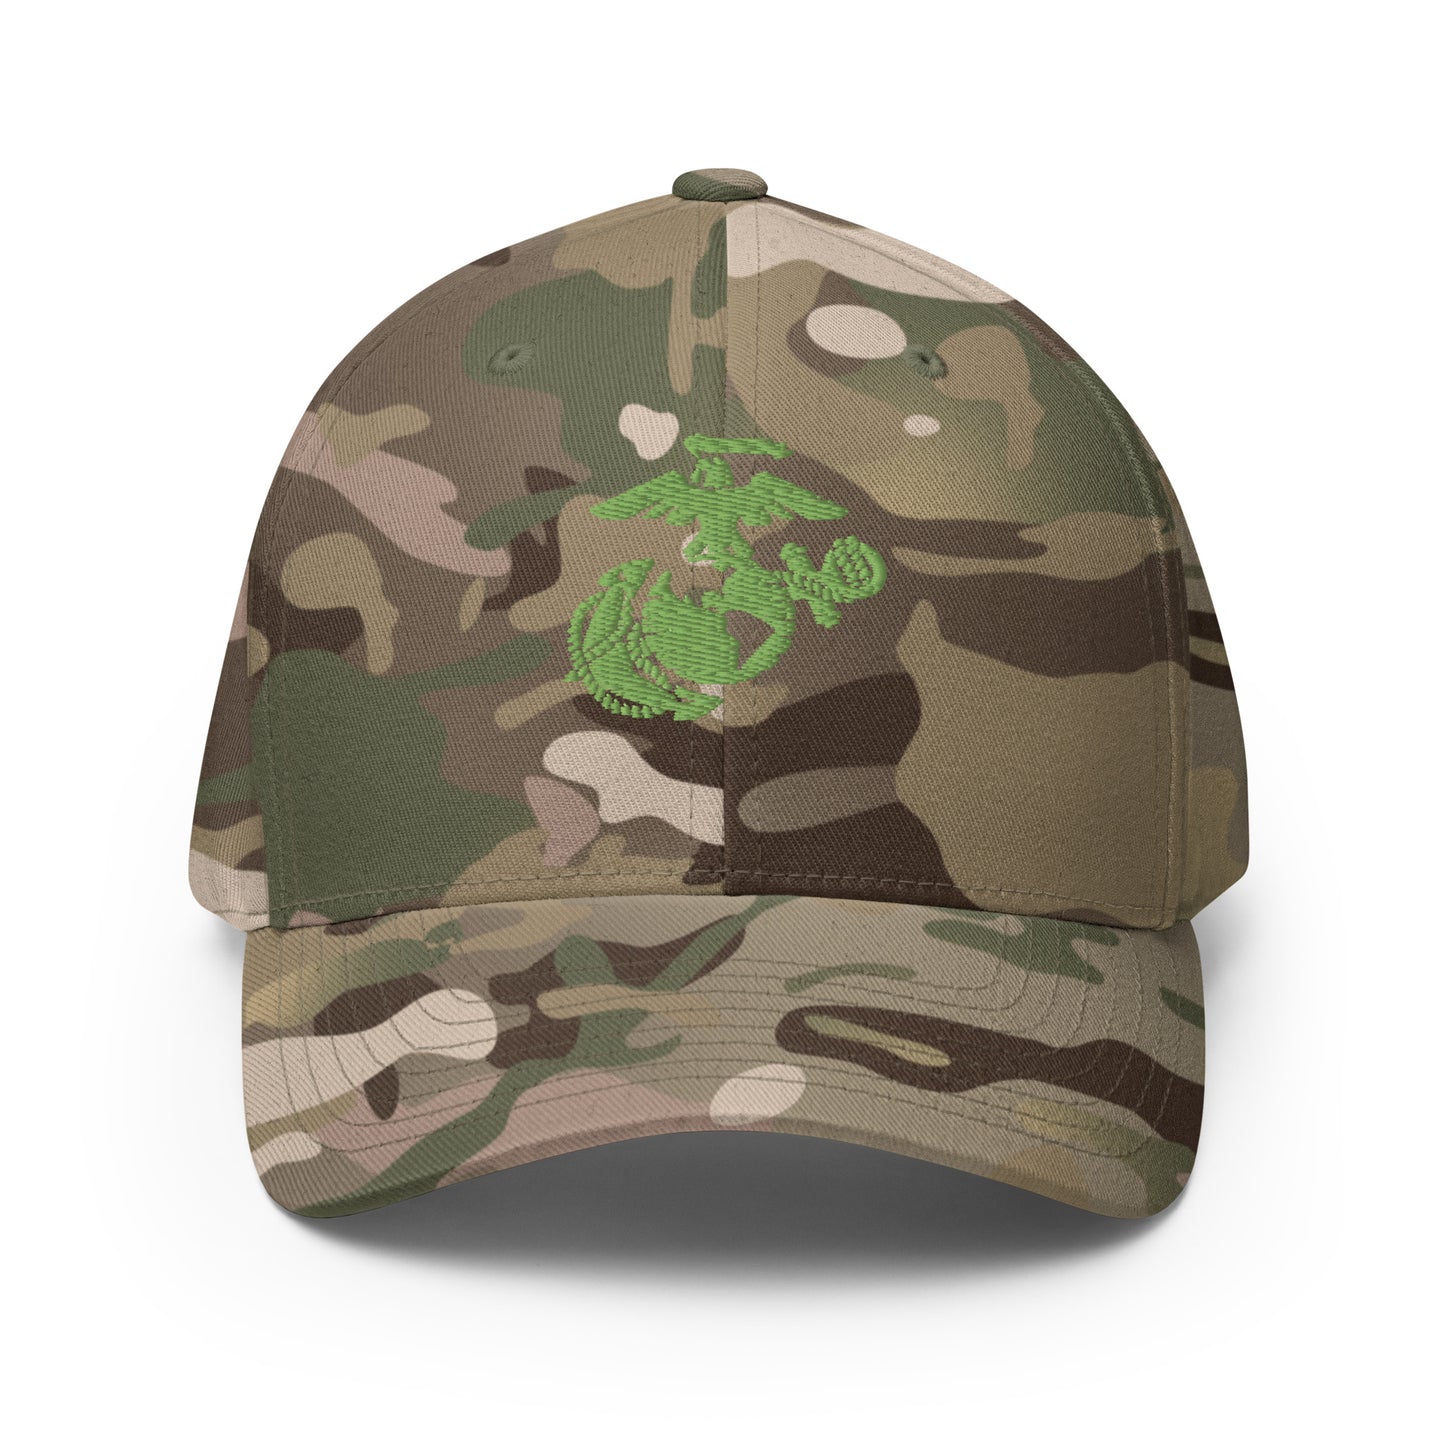 Marine Green Structured Twill Cap